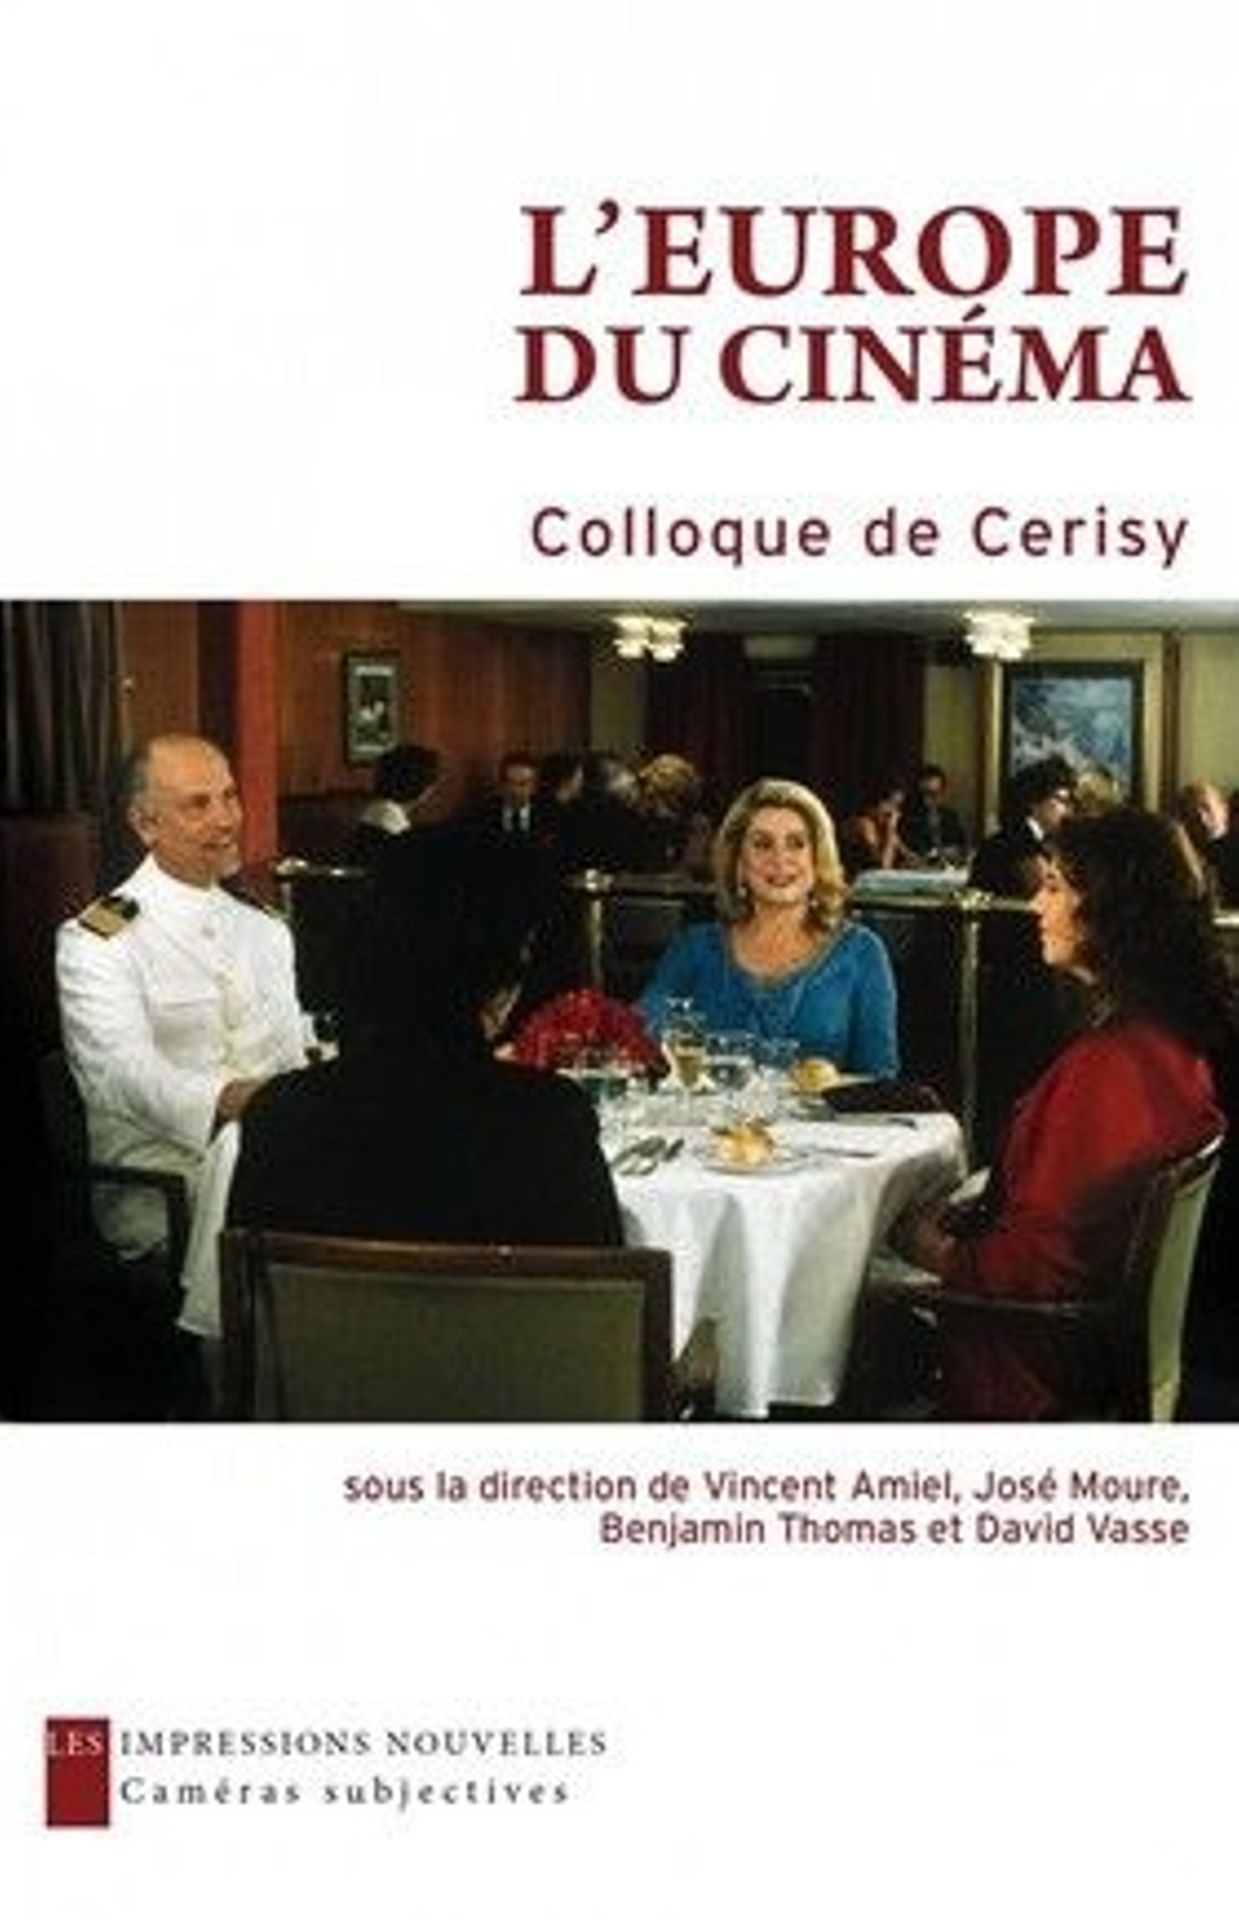 Première de couverture de l'essai "L'Europe du cinéma" publié au Impressions Nouvelles sous la direction de Vincent Amiel, Jose Moure, Benjamin Thomas et David Vasse.